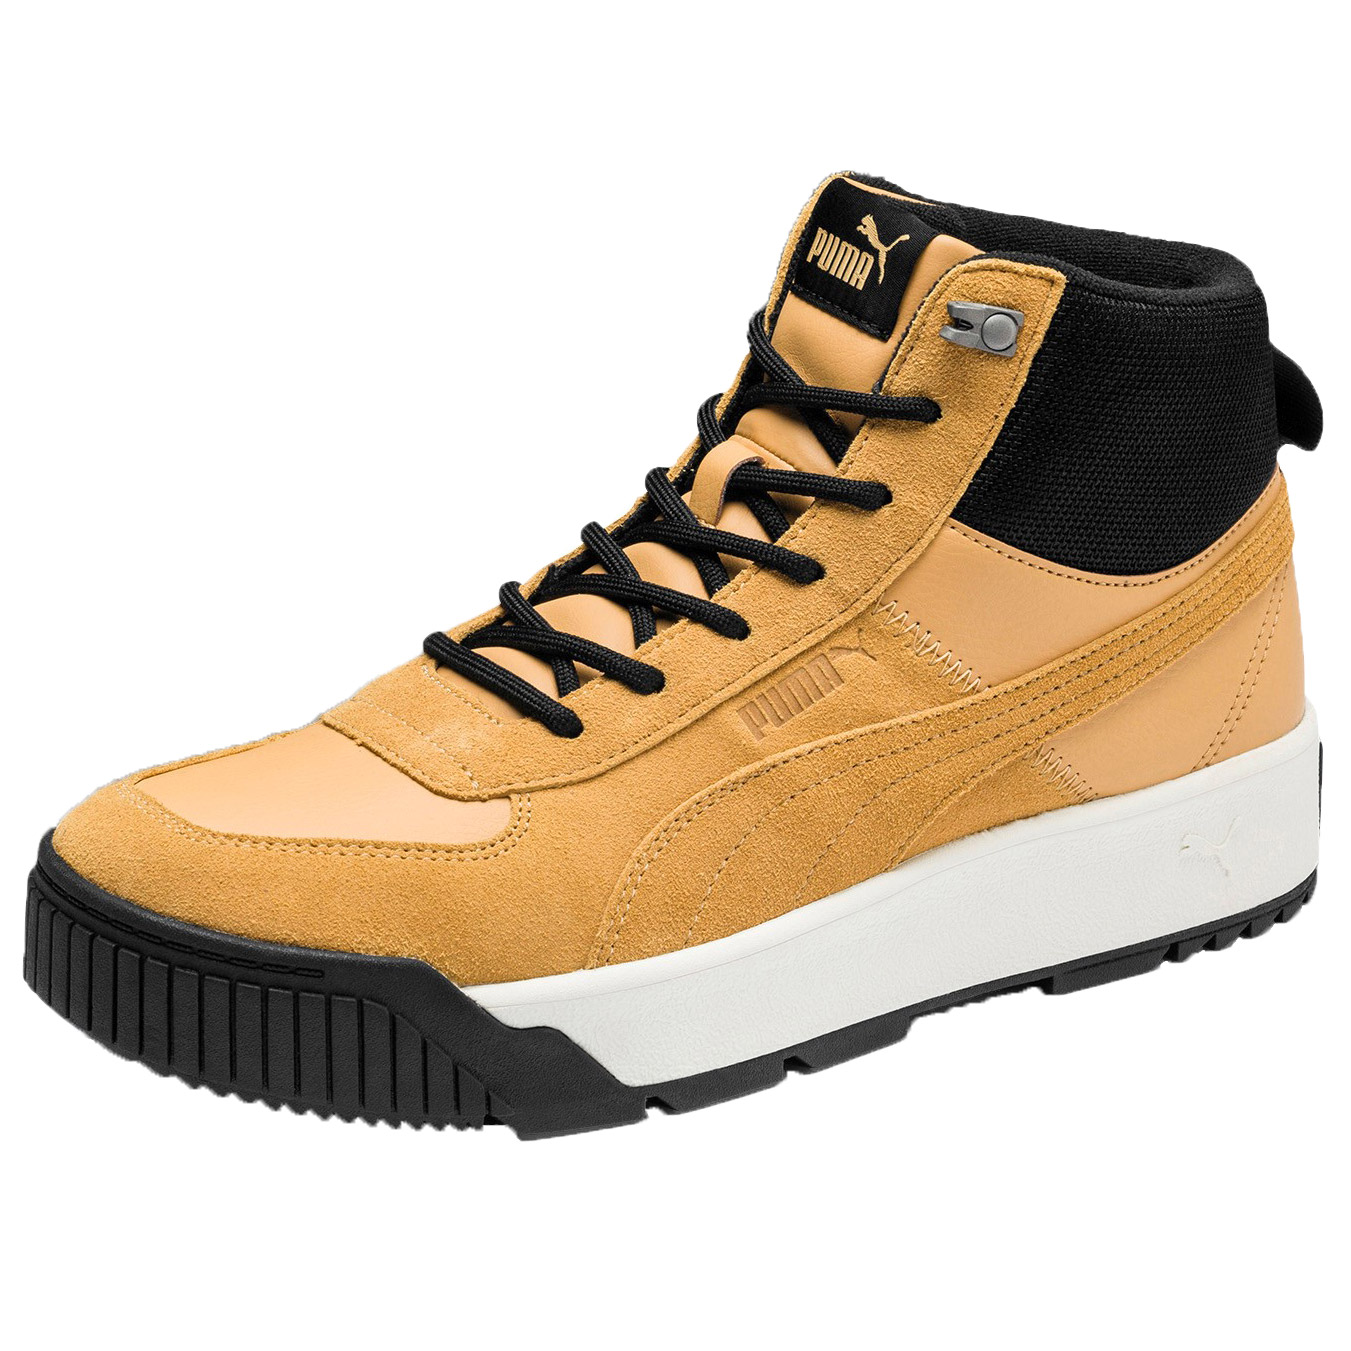 Puma Herren Tarrenz SB Hoher Sneaker  Boots Stiefel 370551 02